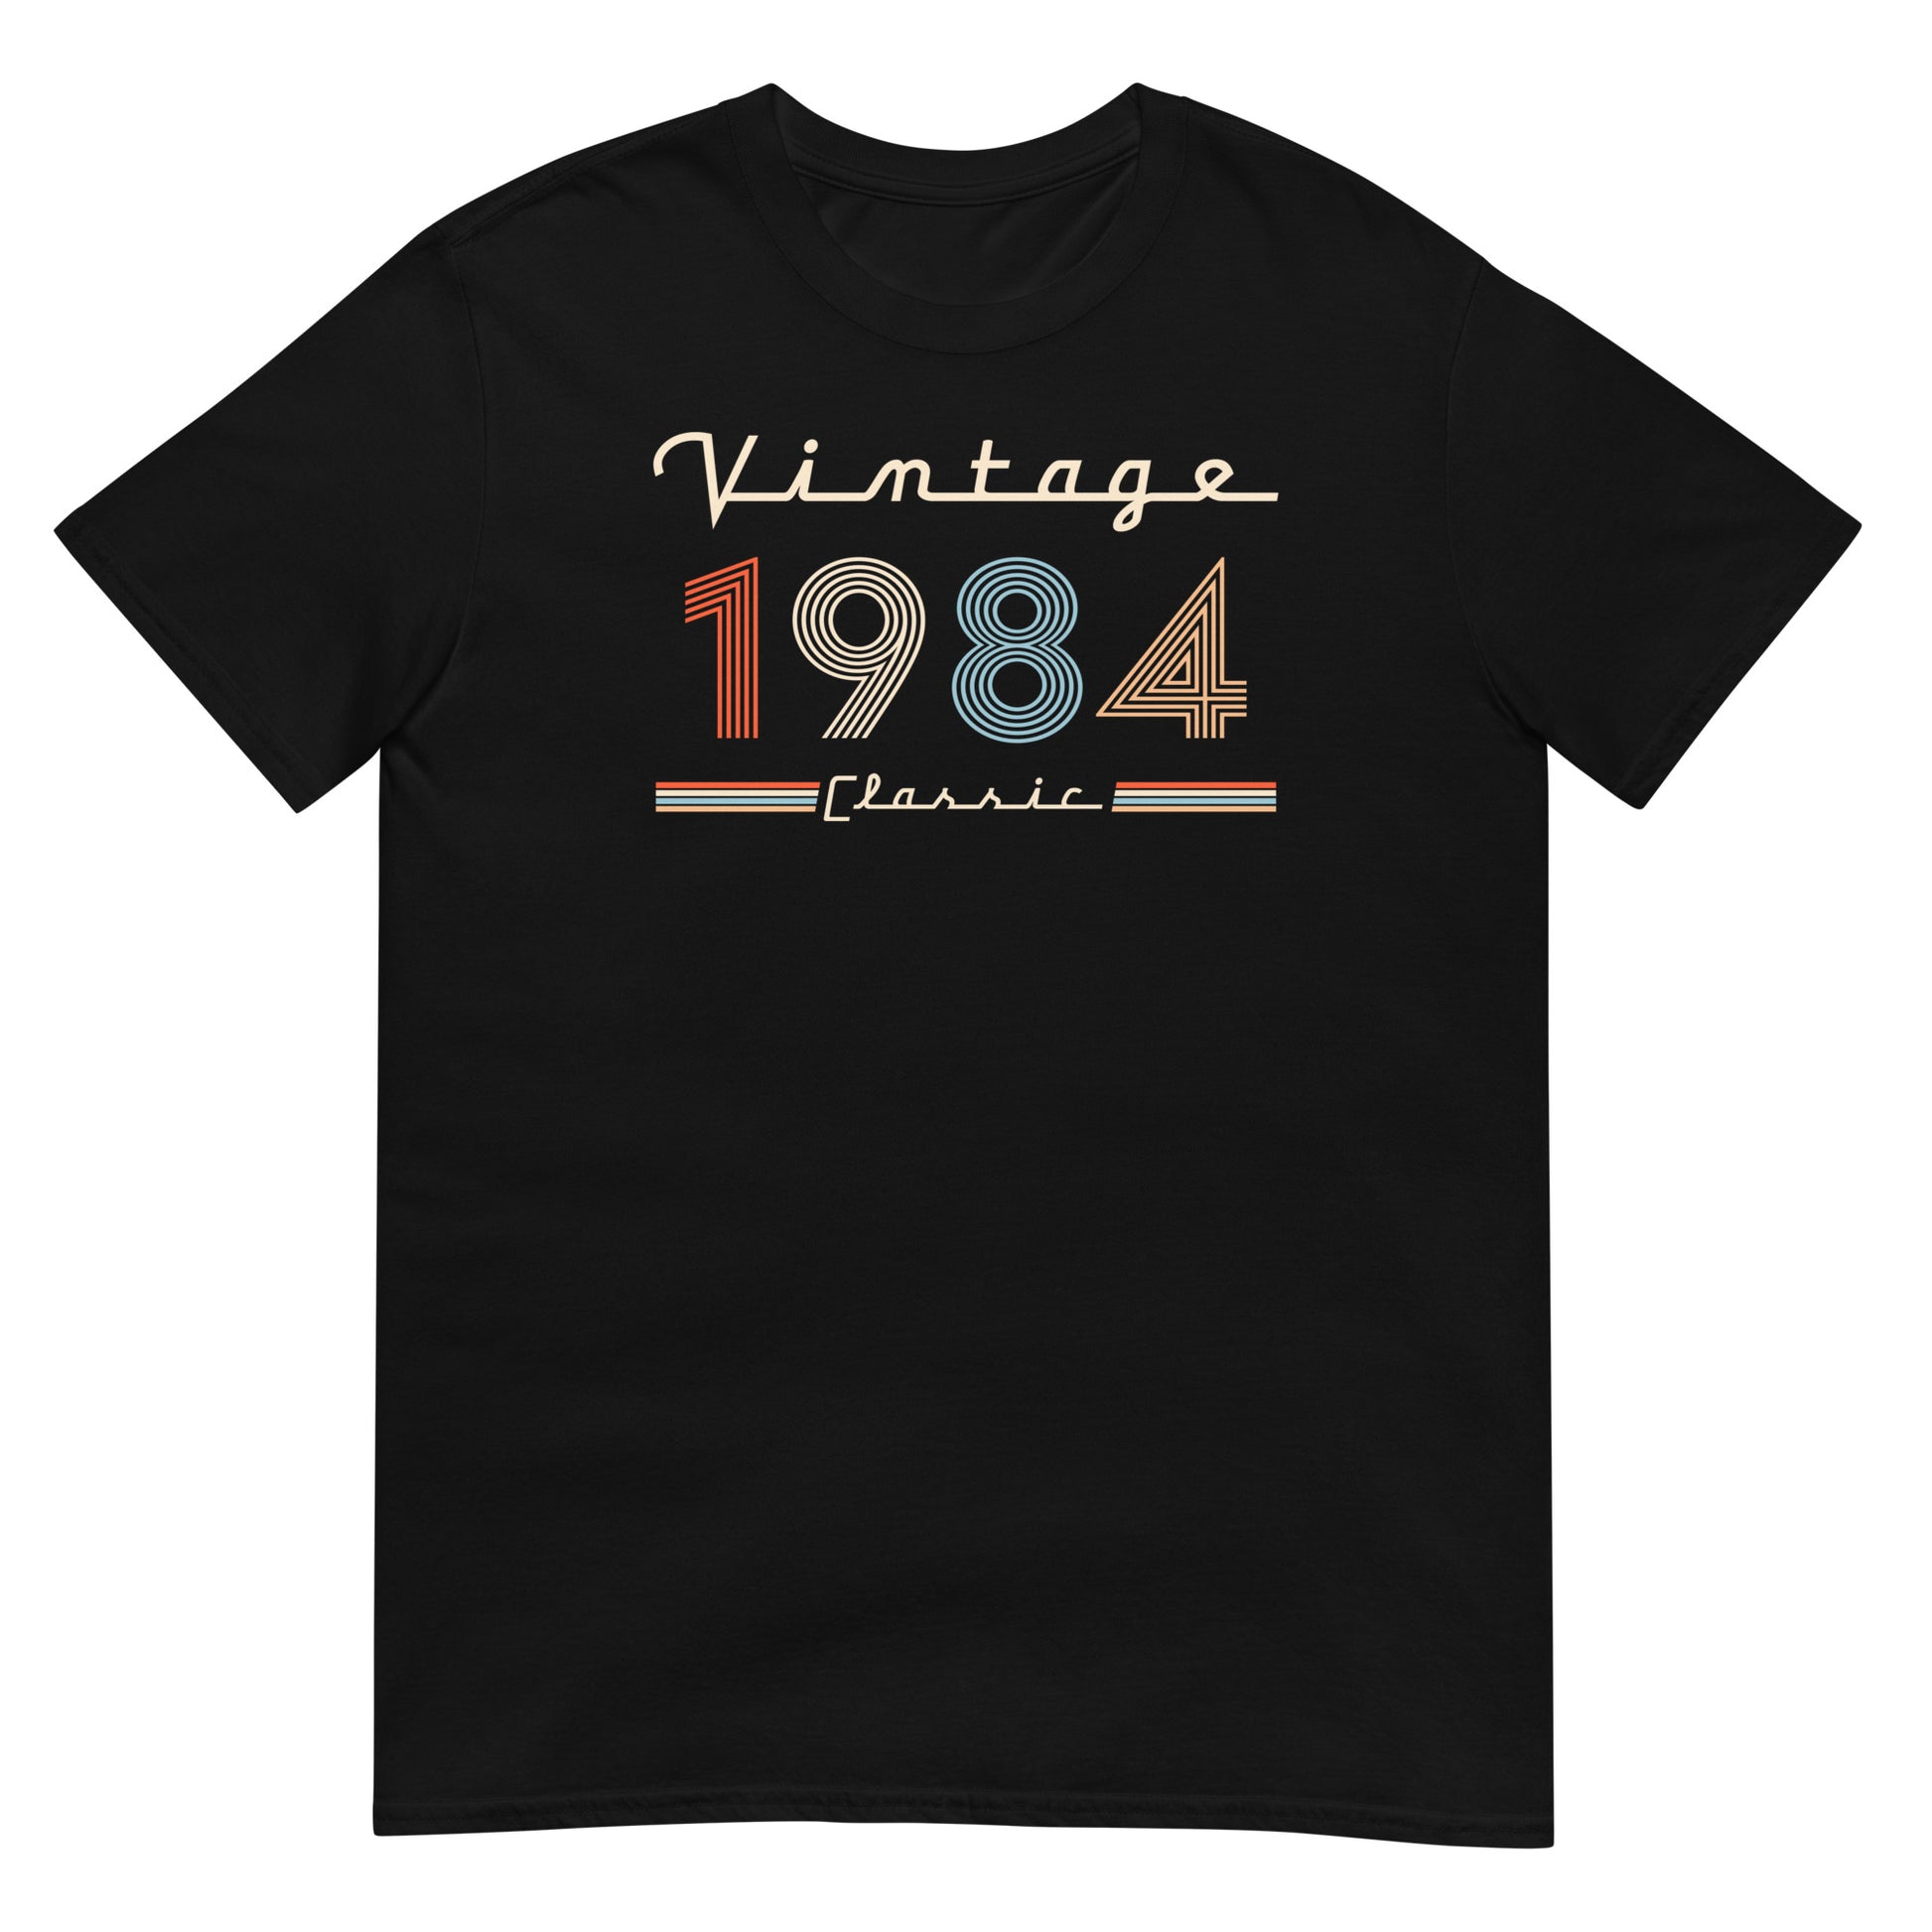 Camiseta 1984 - Vintage Classic - Cumpleaños